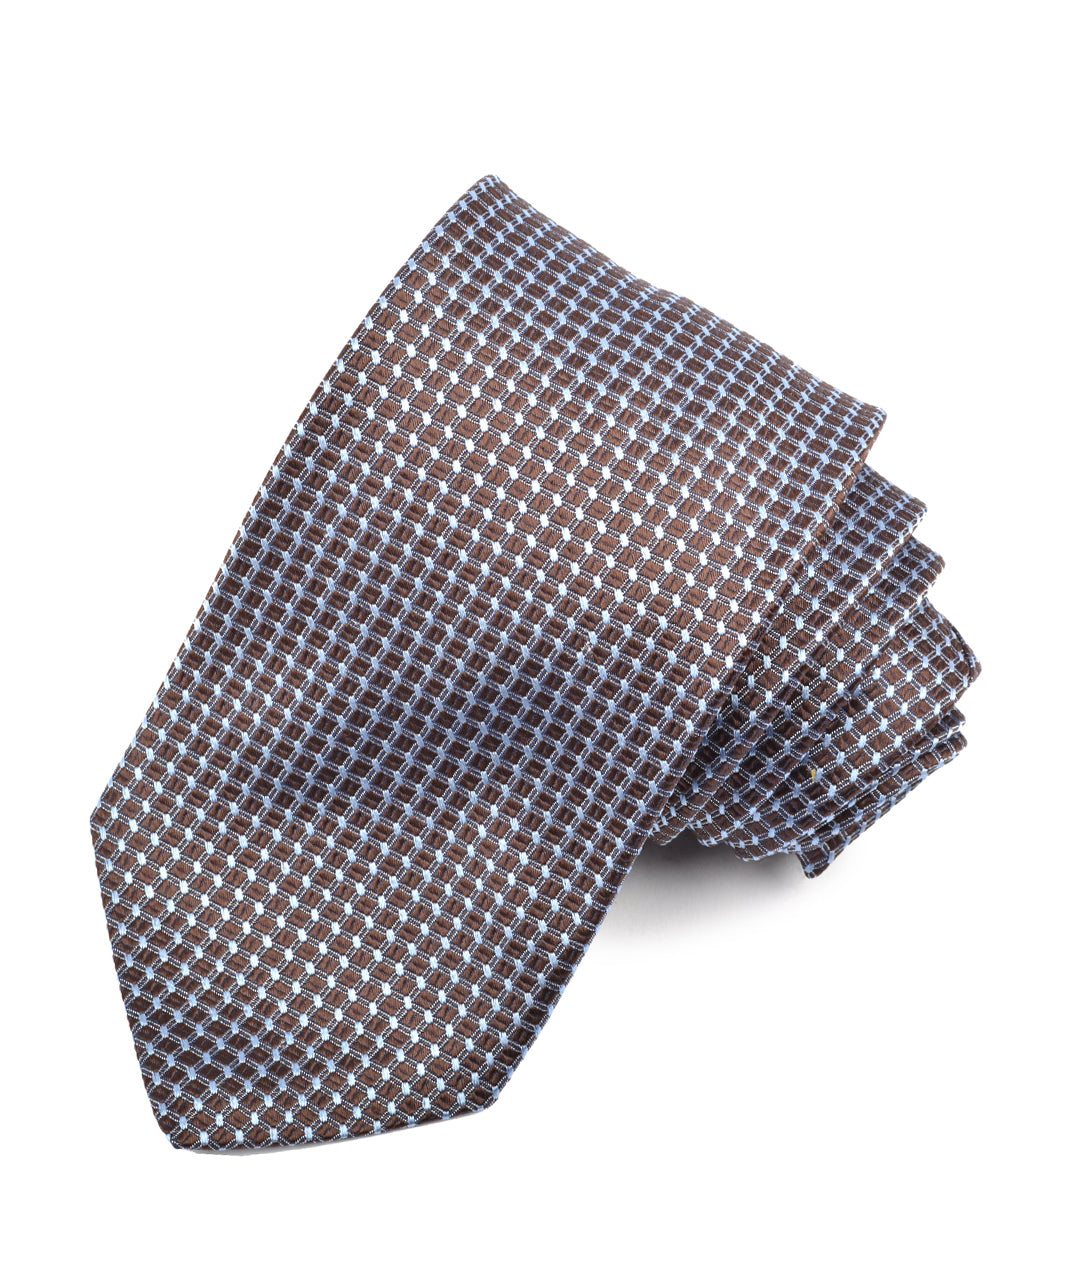 Westport Black Nail Head Cube Tie, Men's Big & Tall